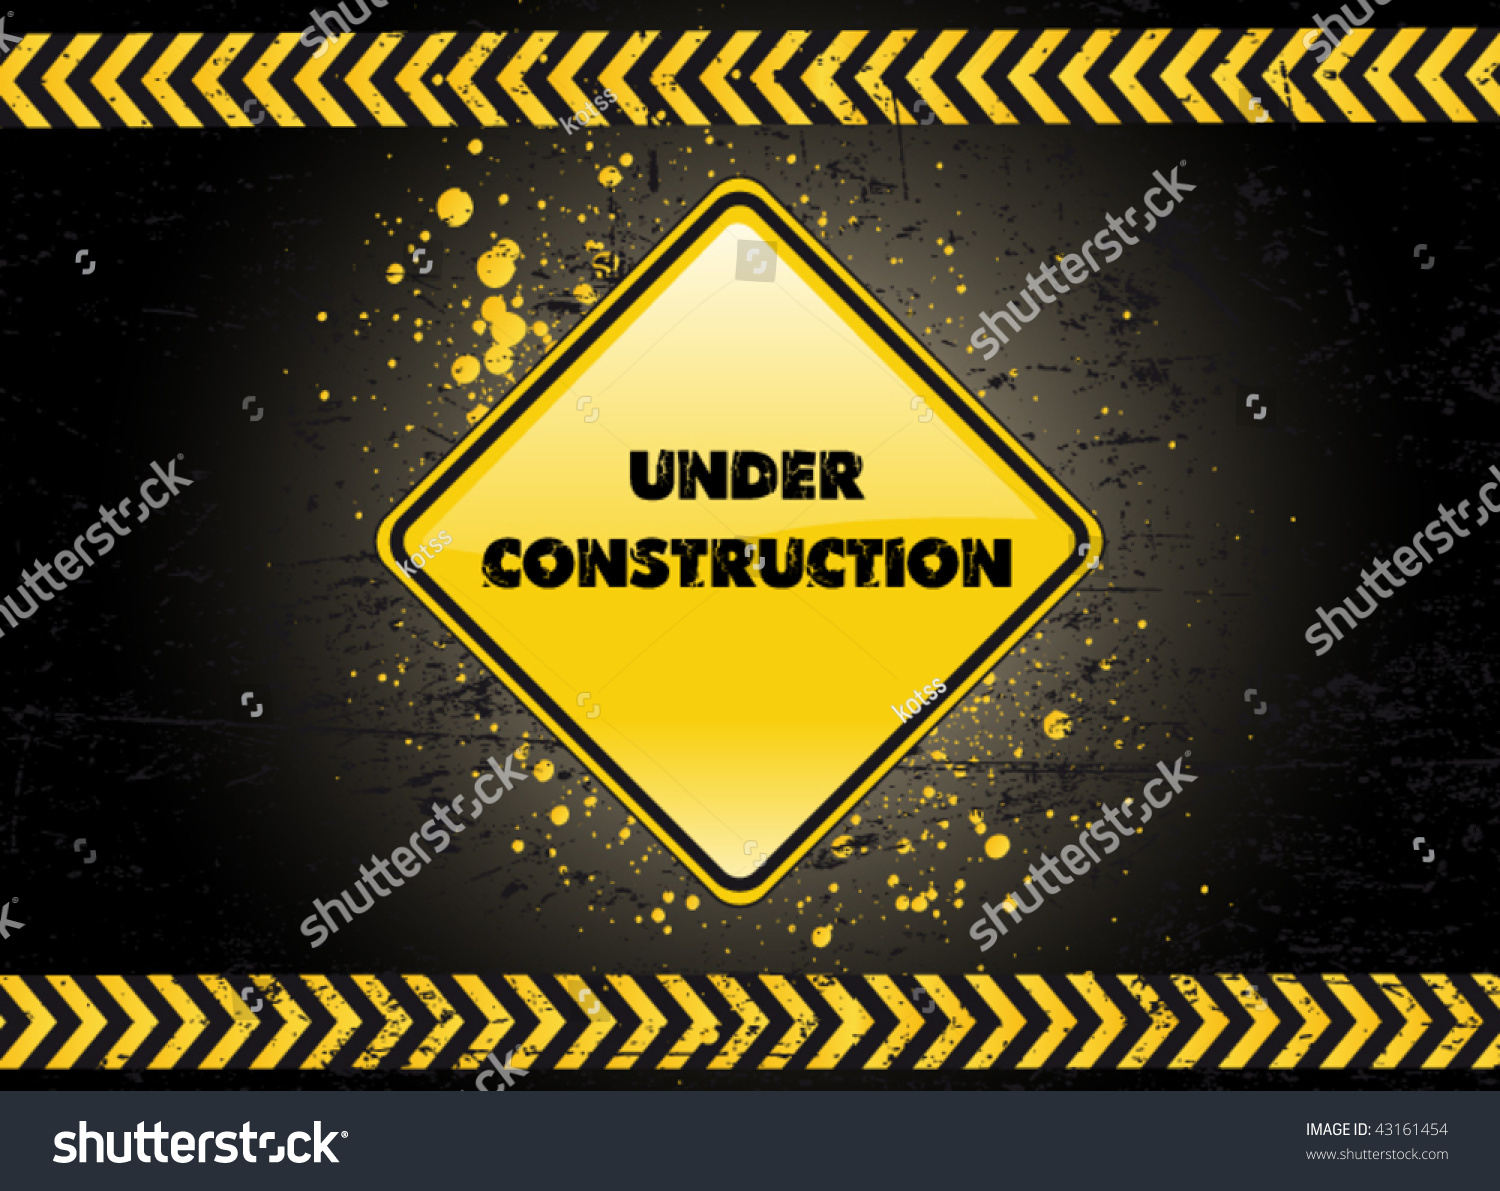 Under Construction Poster Stock Vector Illustration 43161454 : Shutterstock